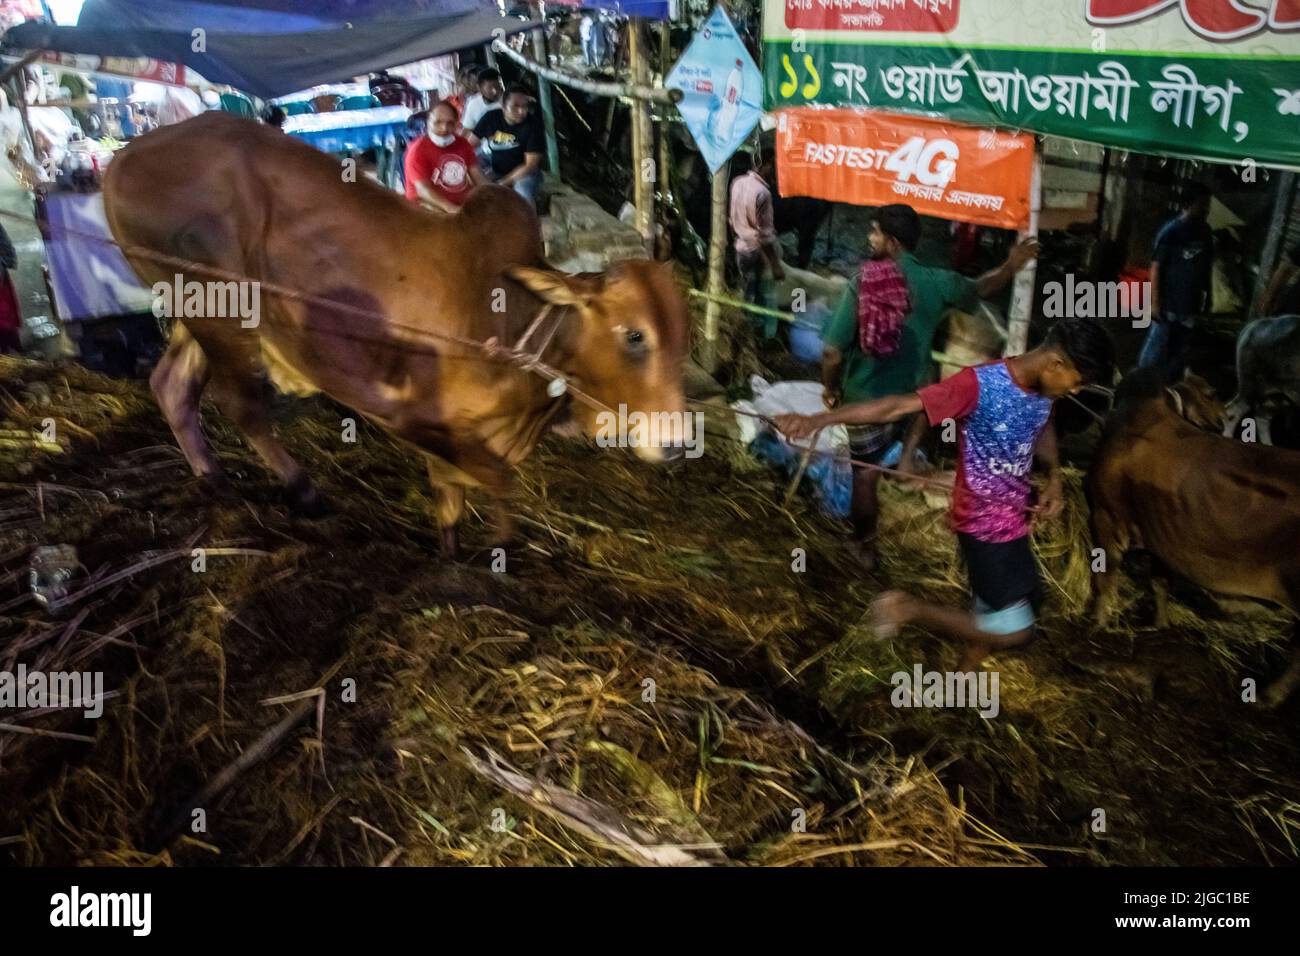 Anbieter, die Kühe auf dem Markt für EID-UL-ADHA verkaufen. EID-UL-ADHA ist 2. das größte Fest für Muslime. Bei diesem Fest opfern die Menschen Kühe und Ziegen. Stockfoto